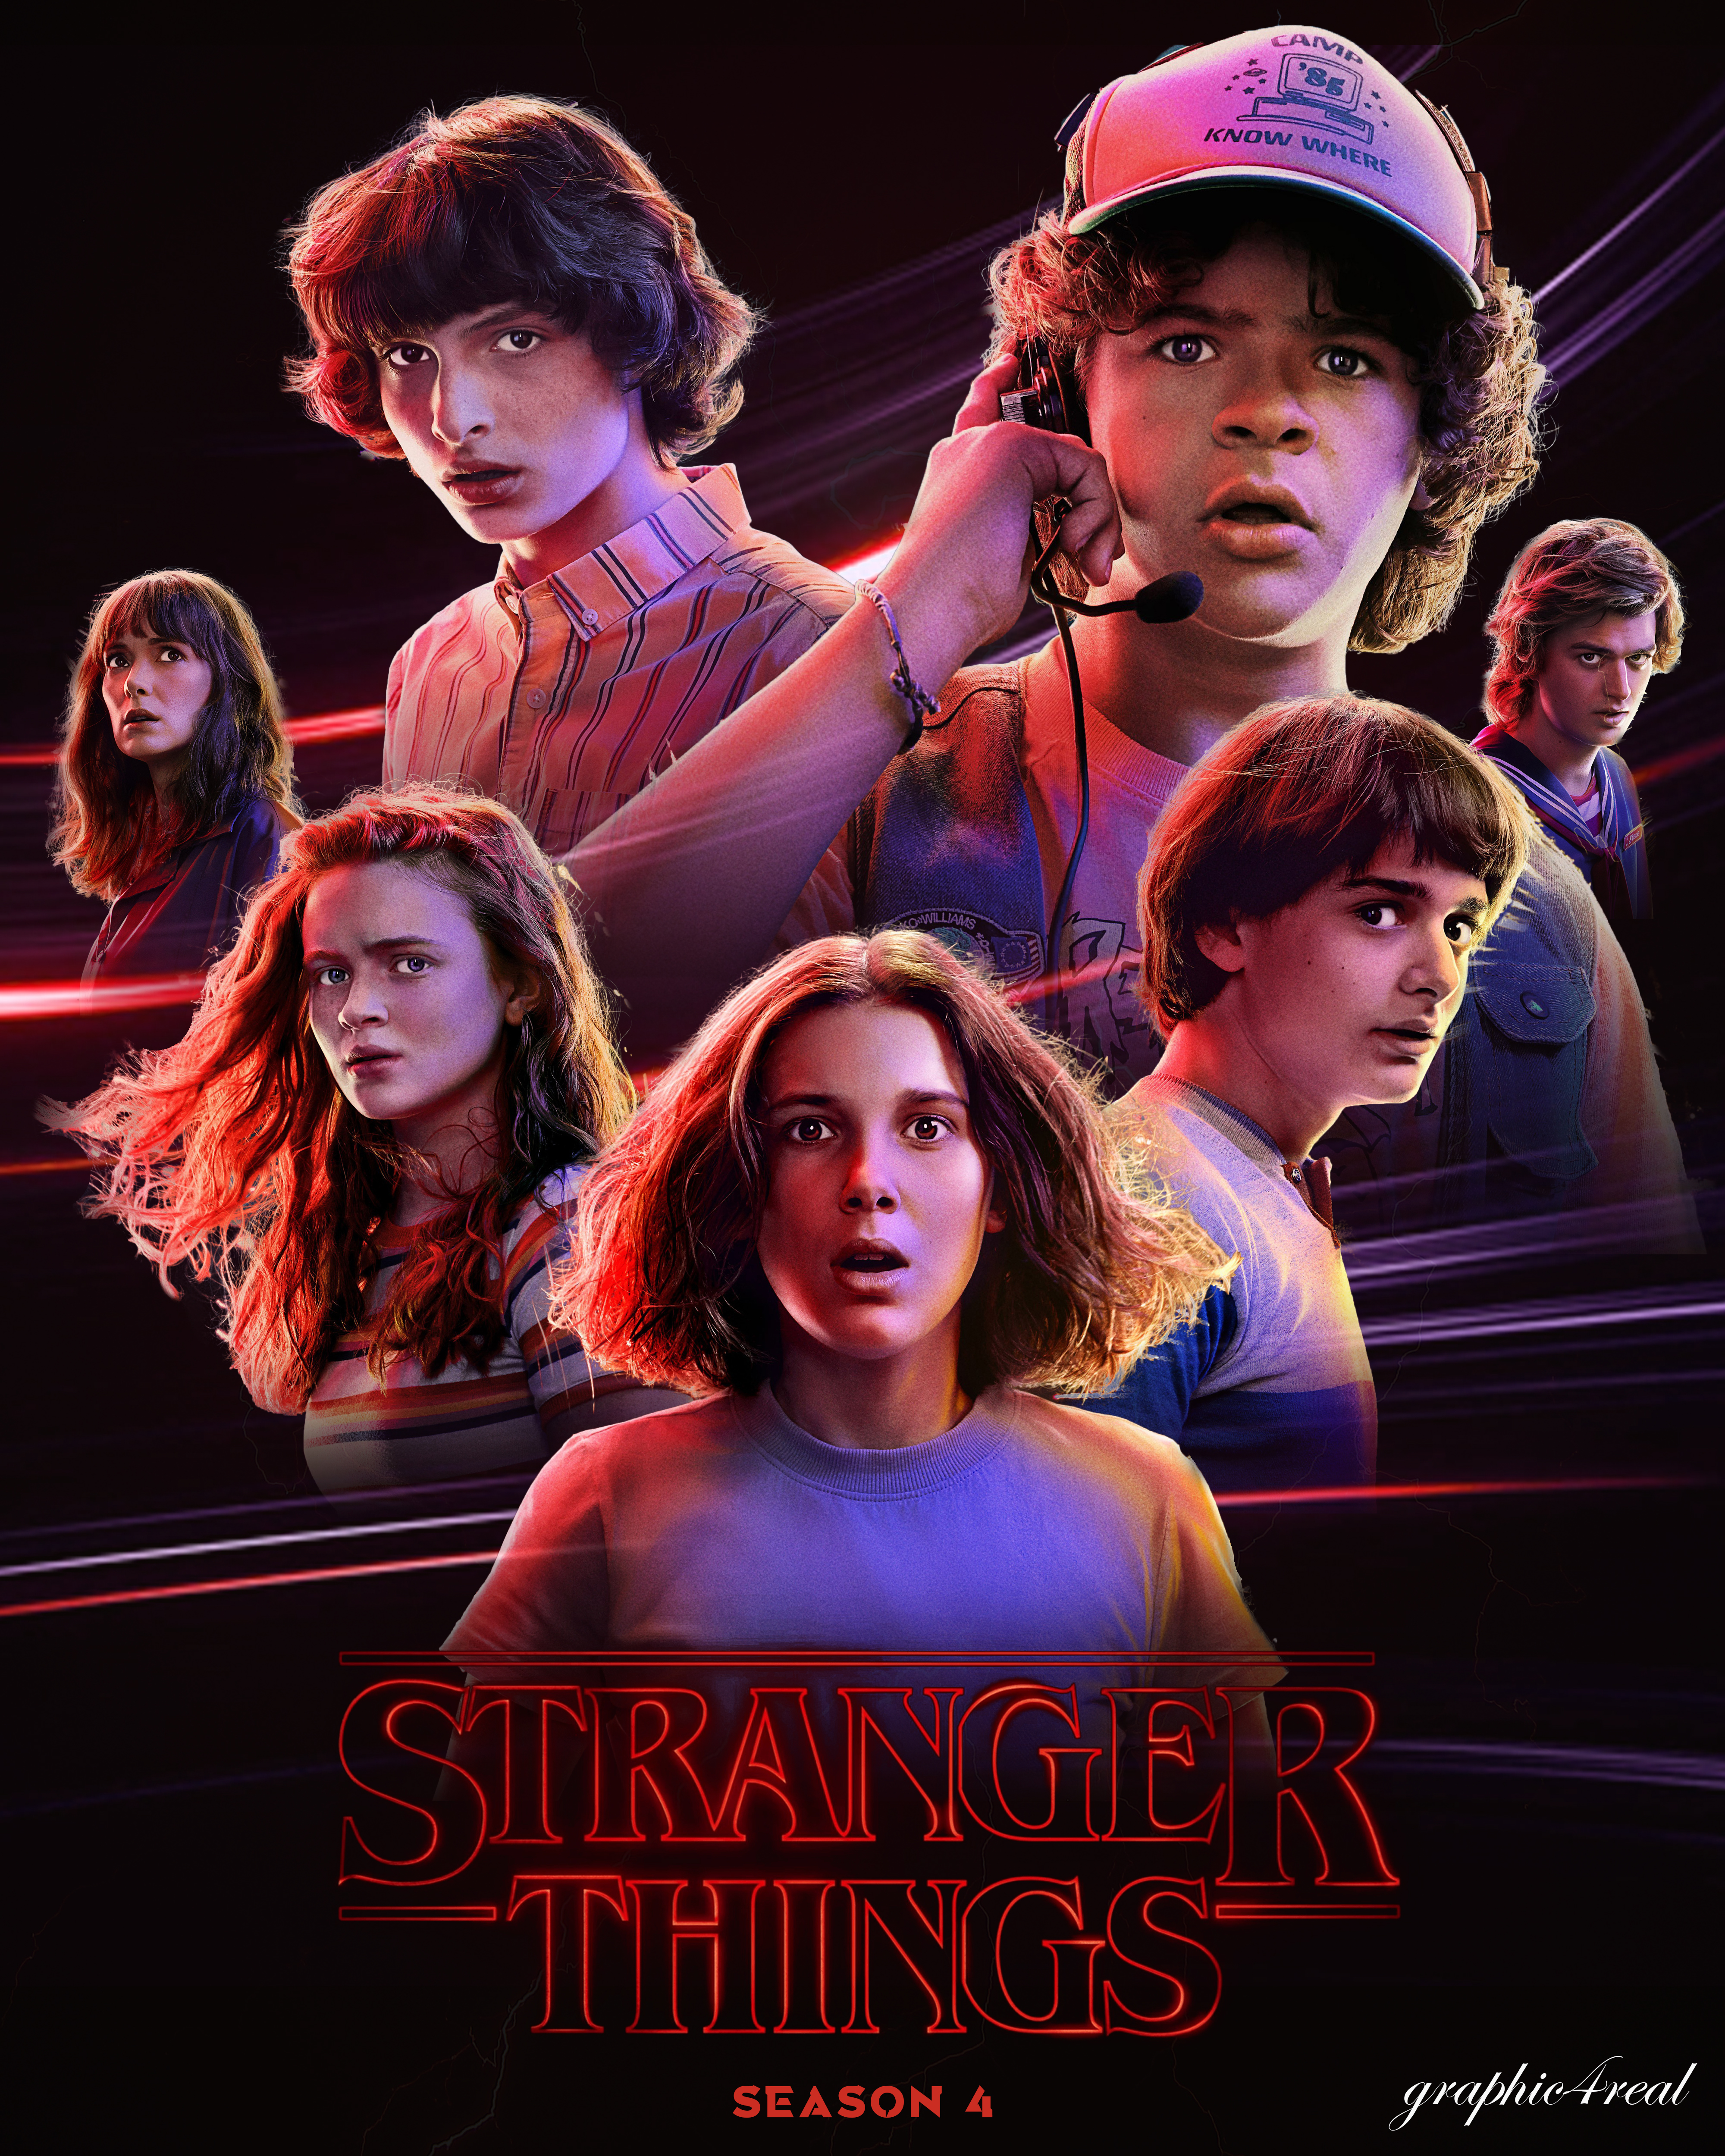 Stranger Things Temporada 4 by EstrellaFugaz9 on DeviantArt